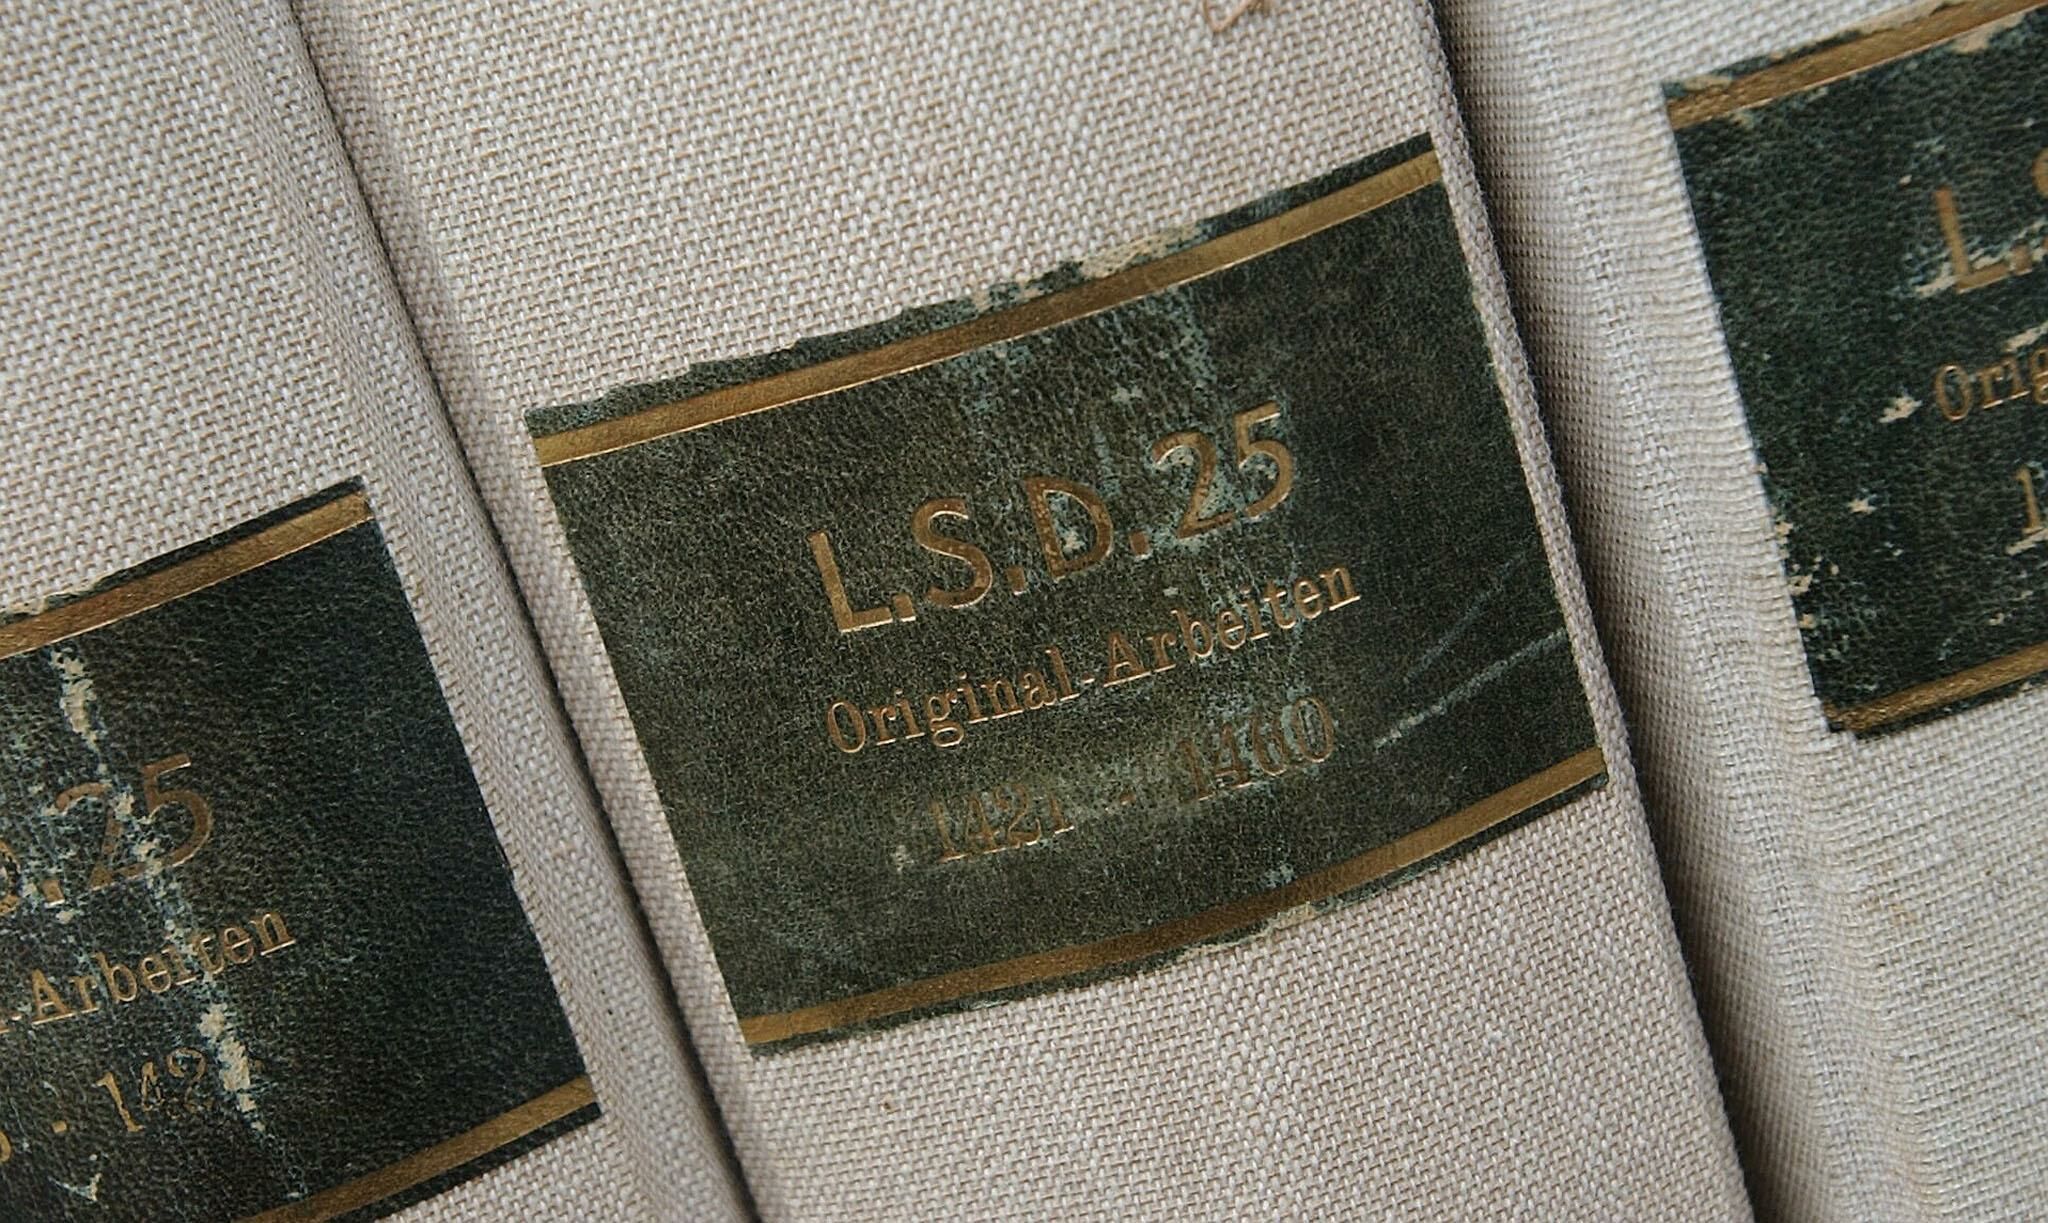 LSD-Ordner aus dem Archiv von Albert Hofmann, Foto: Roger Liggenstorfer